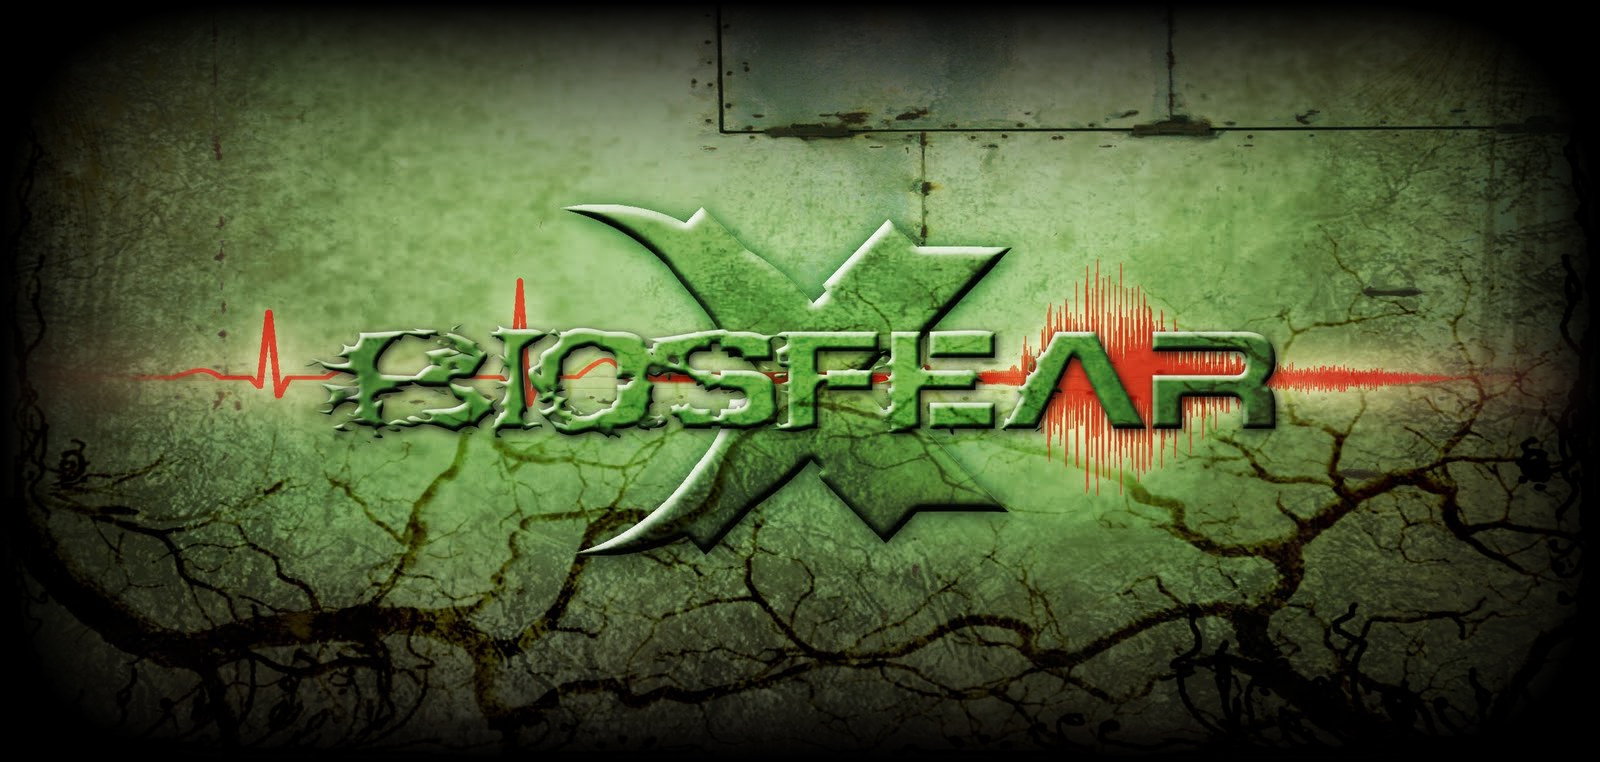 Biosfear logo